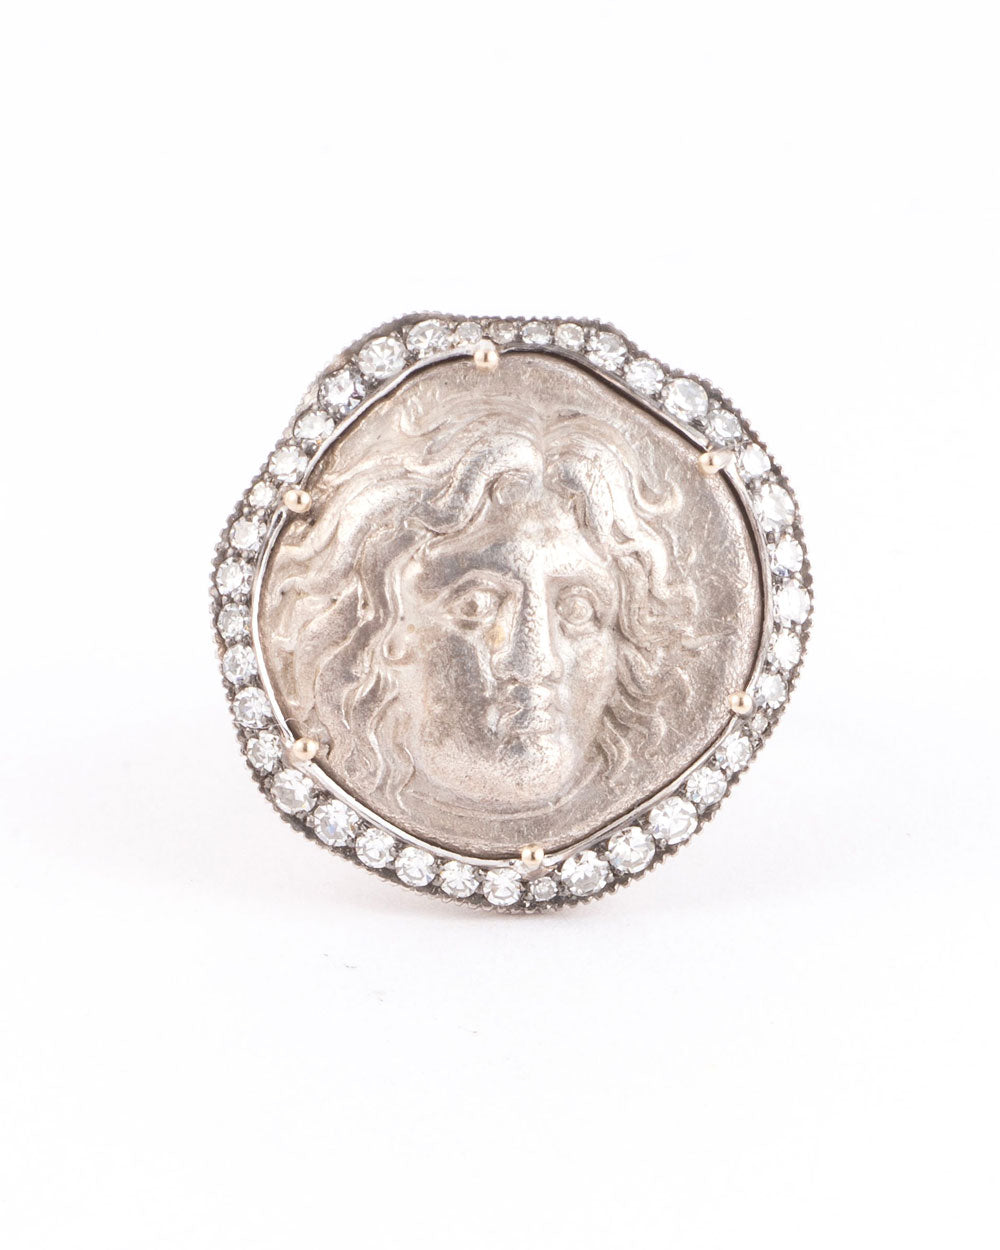 Helios “Sun God” Coin Ring